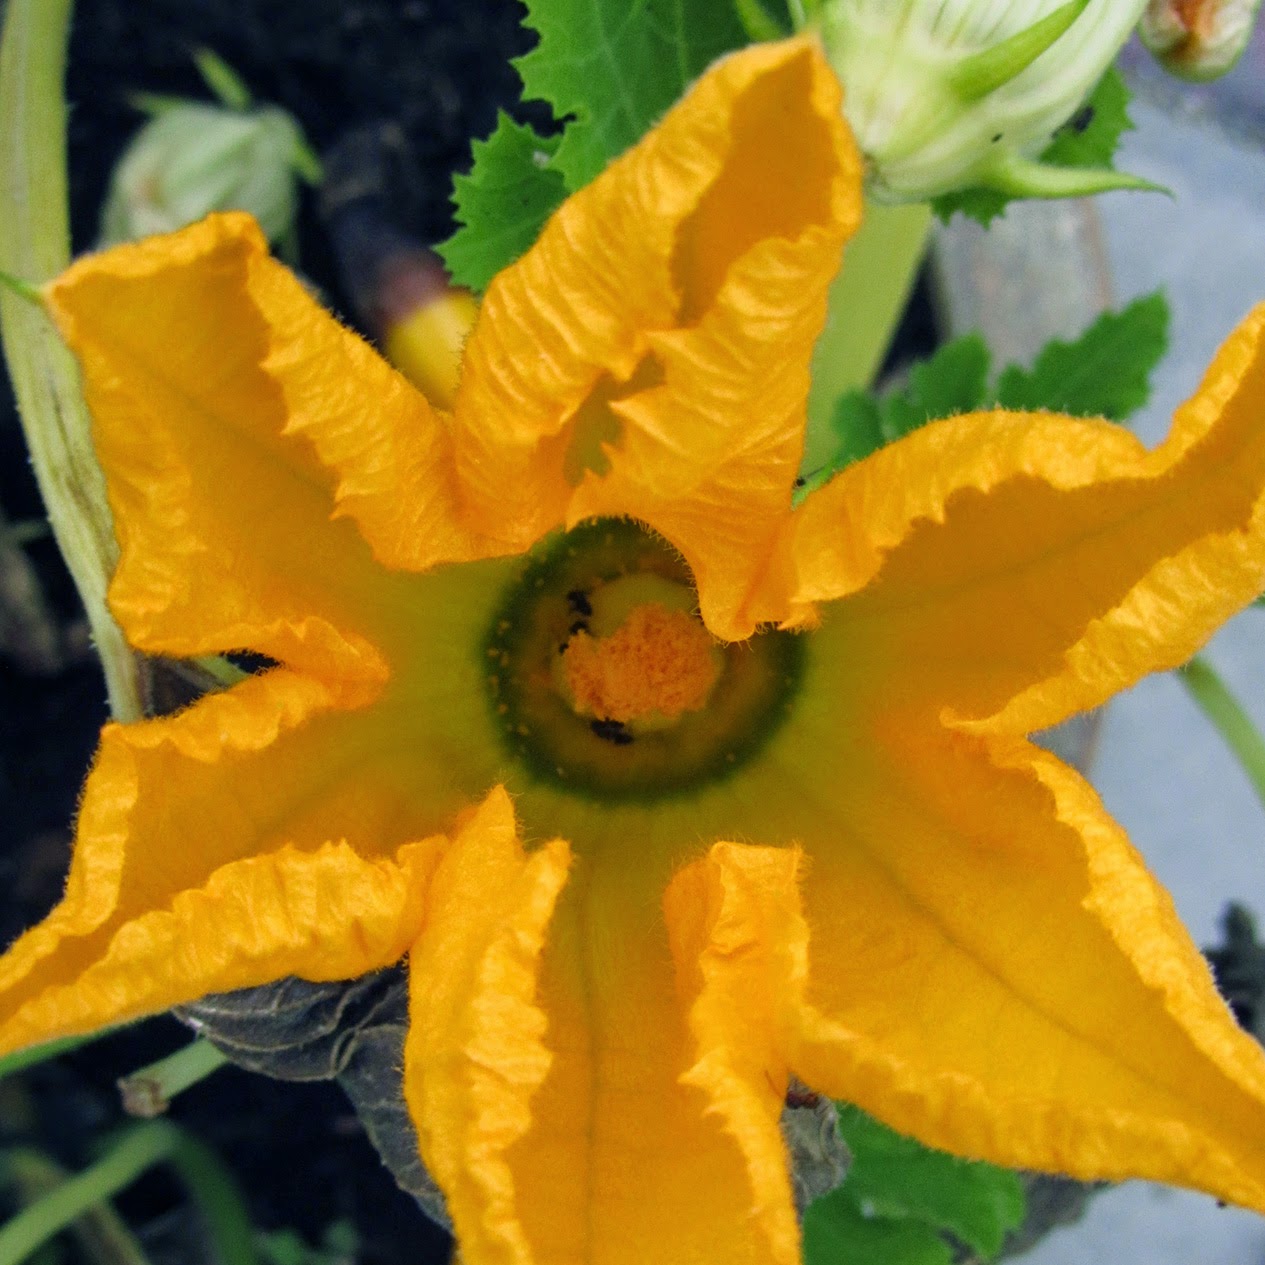 yellow zucchini flower